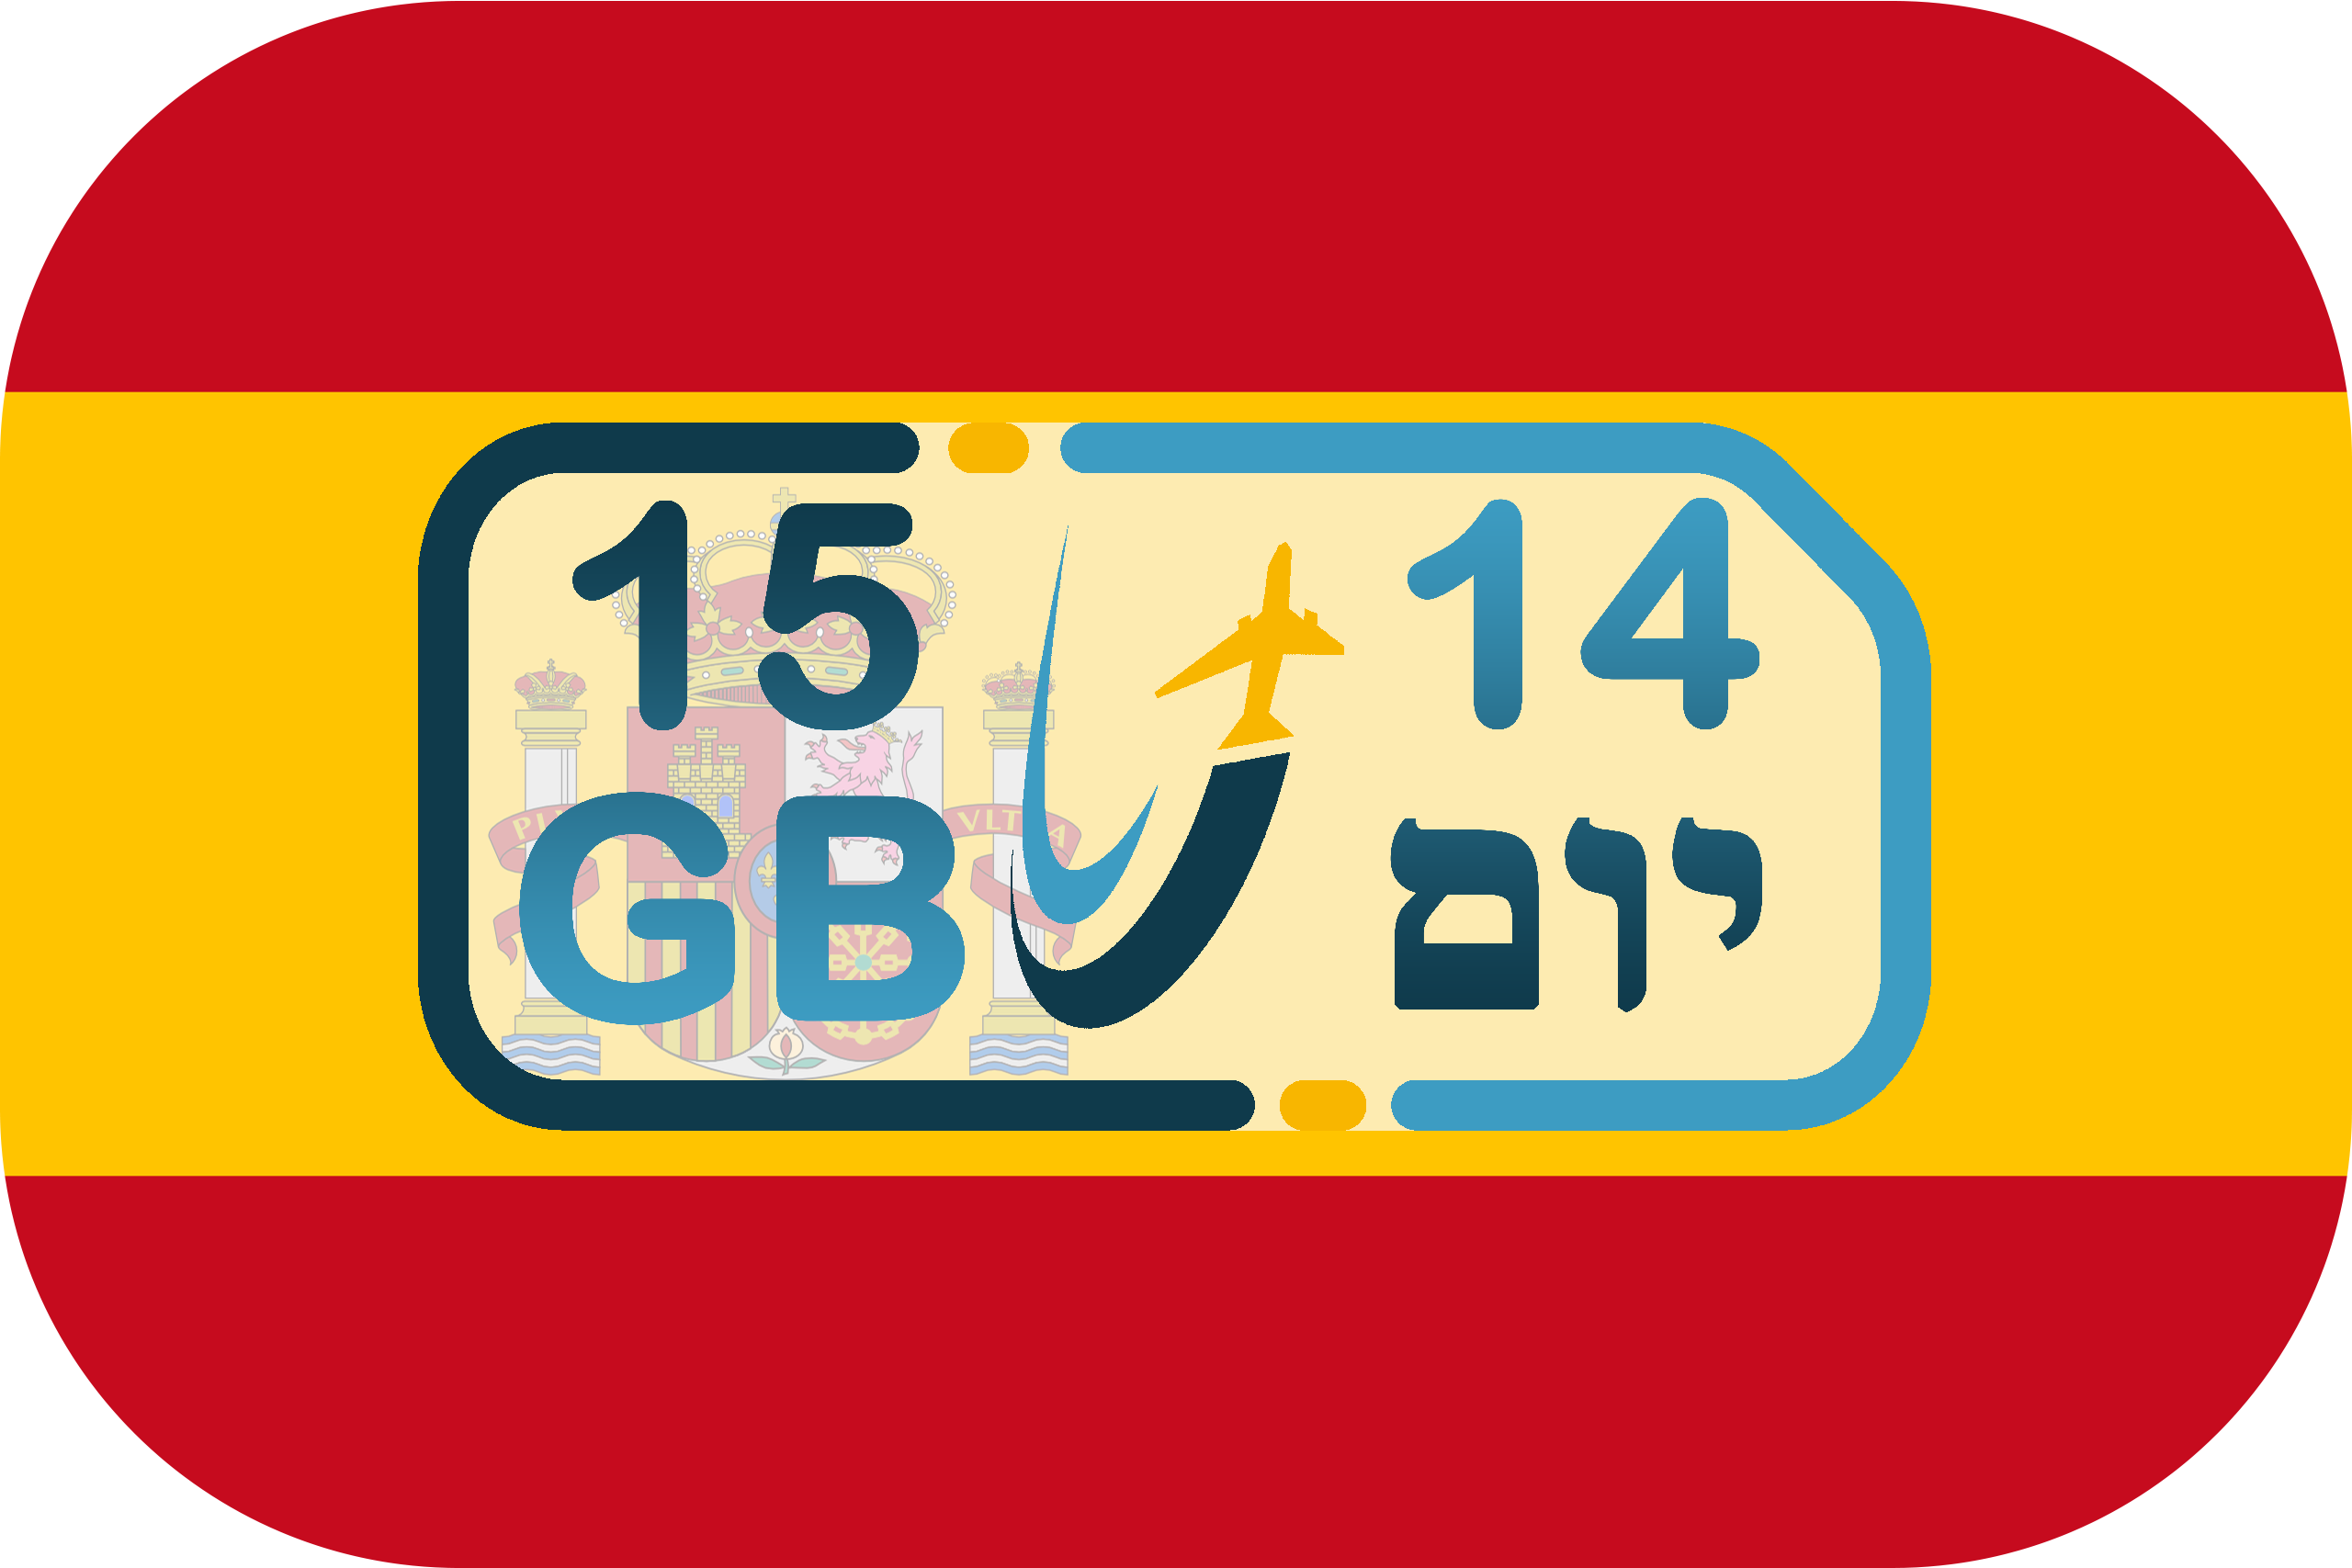 כרטיס סים בספרד – גלישה 15GB (בתוקף ל- 14 יום)